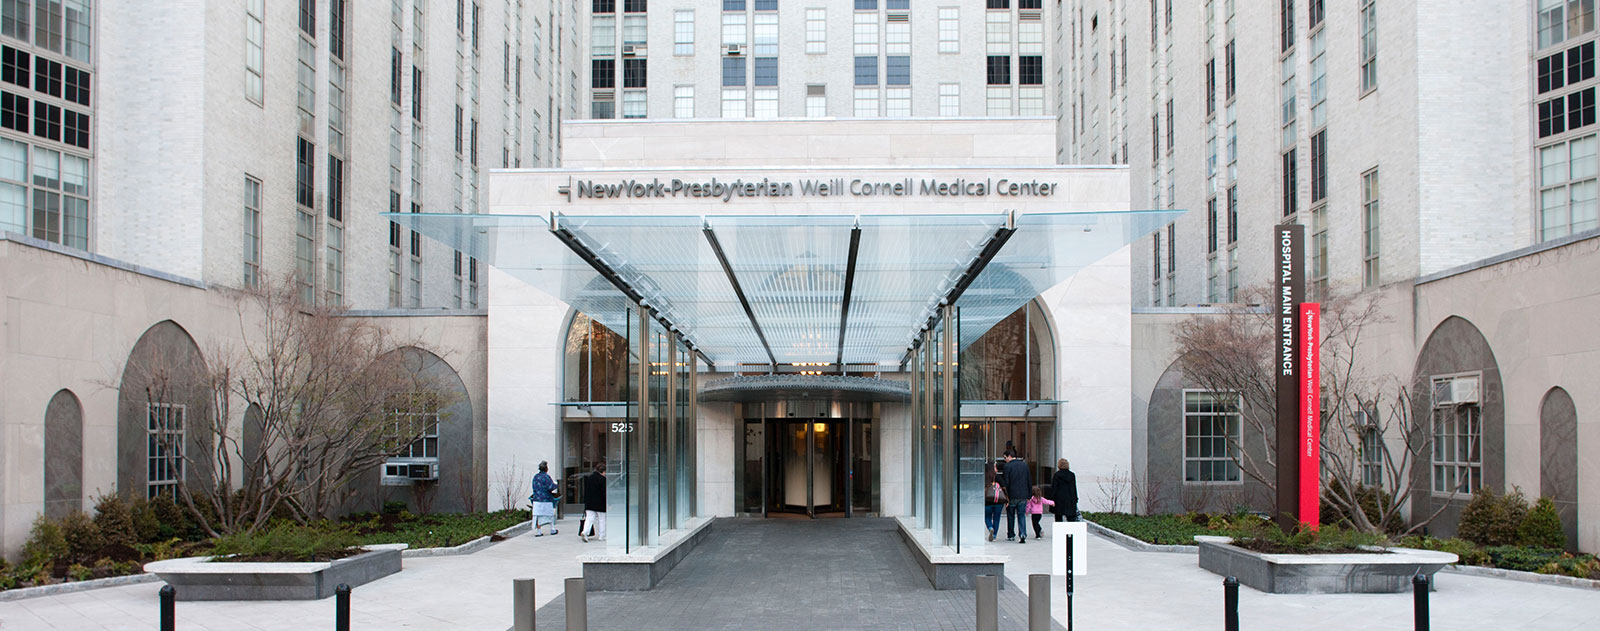 Establishment of the New York Hospital-Cornell Medical Center